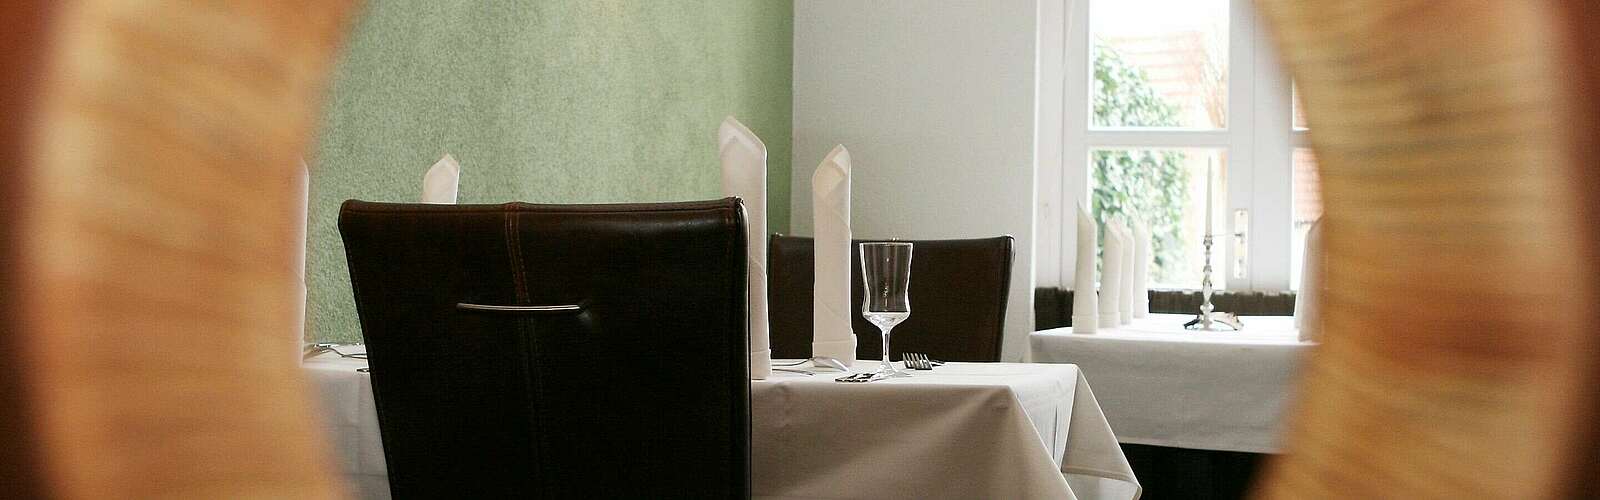 Geheimer Blick in das Restaurant kochZimmer,
        
    

        Foto: Fotograf / Lizenz - Media Import/Steffen Lehmann